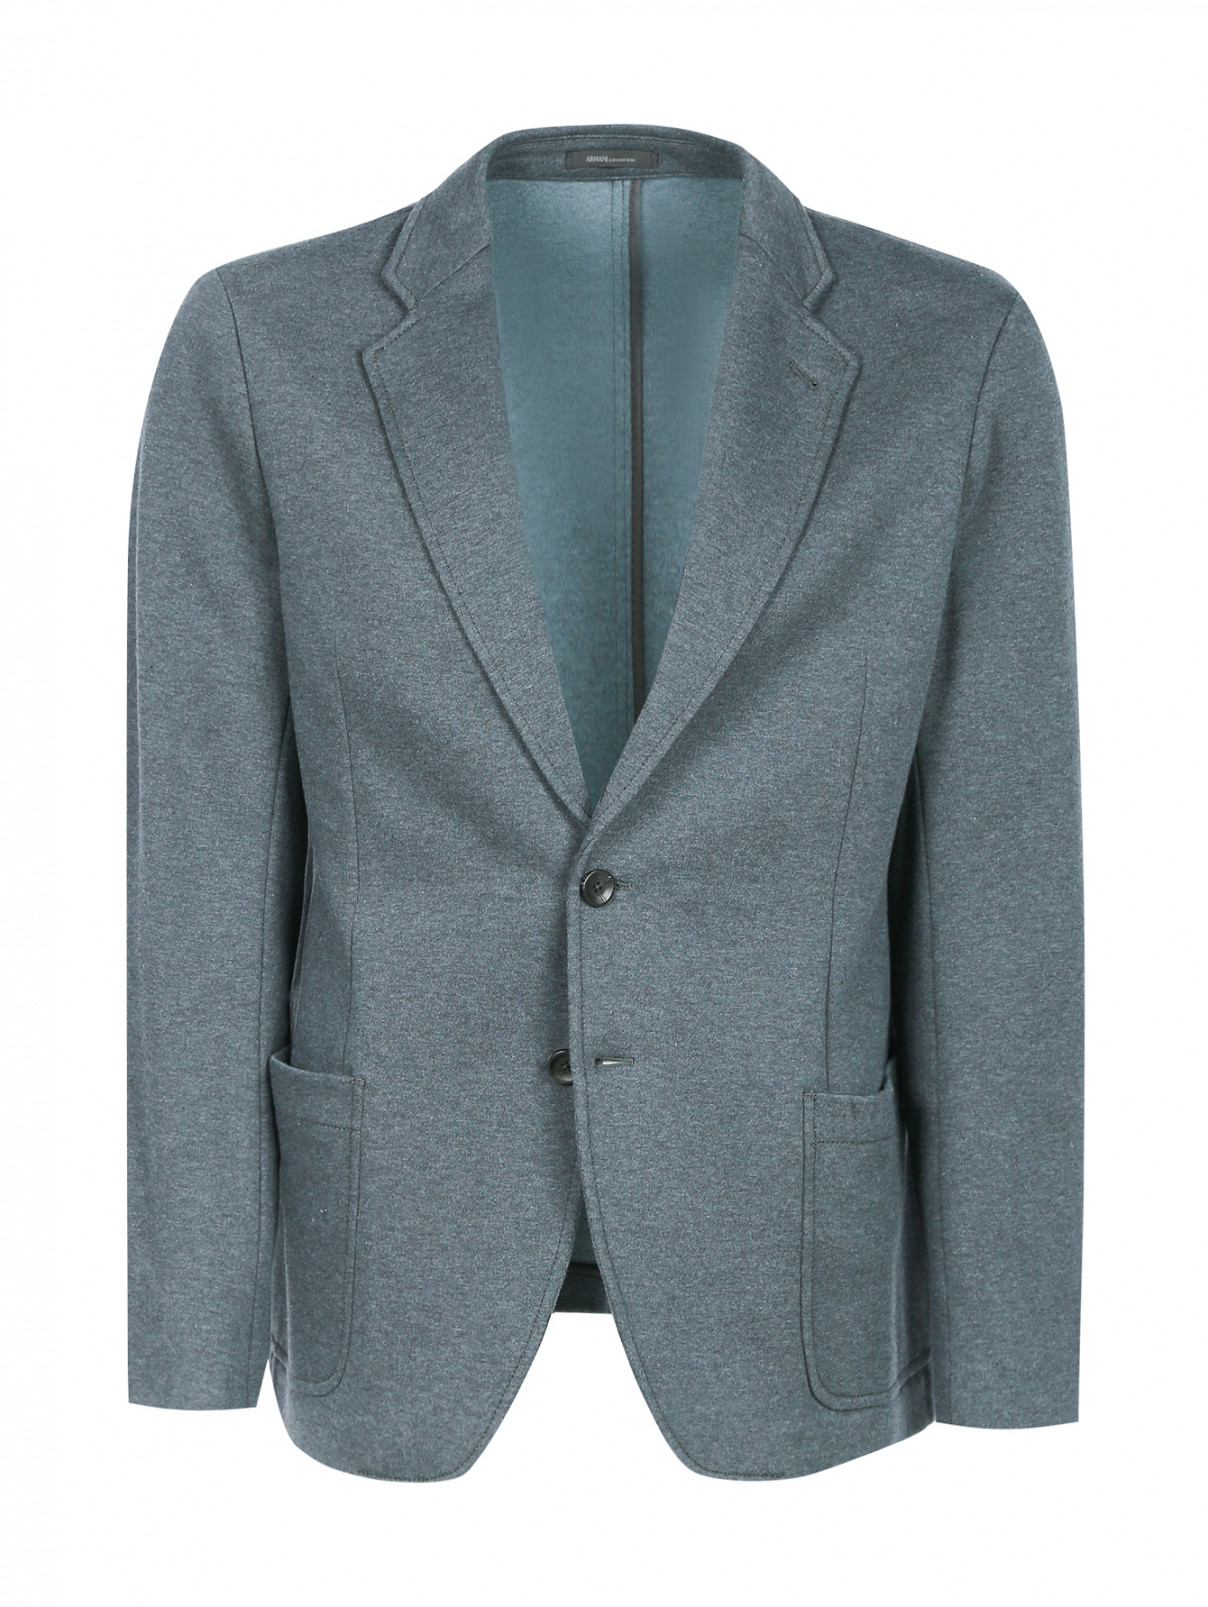 Пиджак однобортный из хлопка Armani Collezioni  –  Общий вид  – Цвет:  Серый